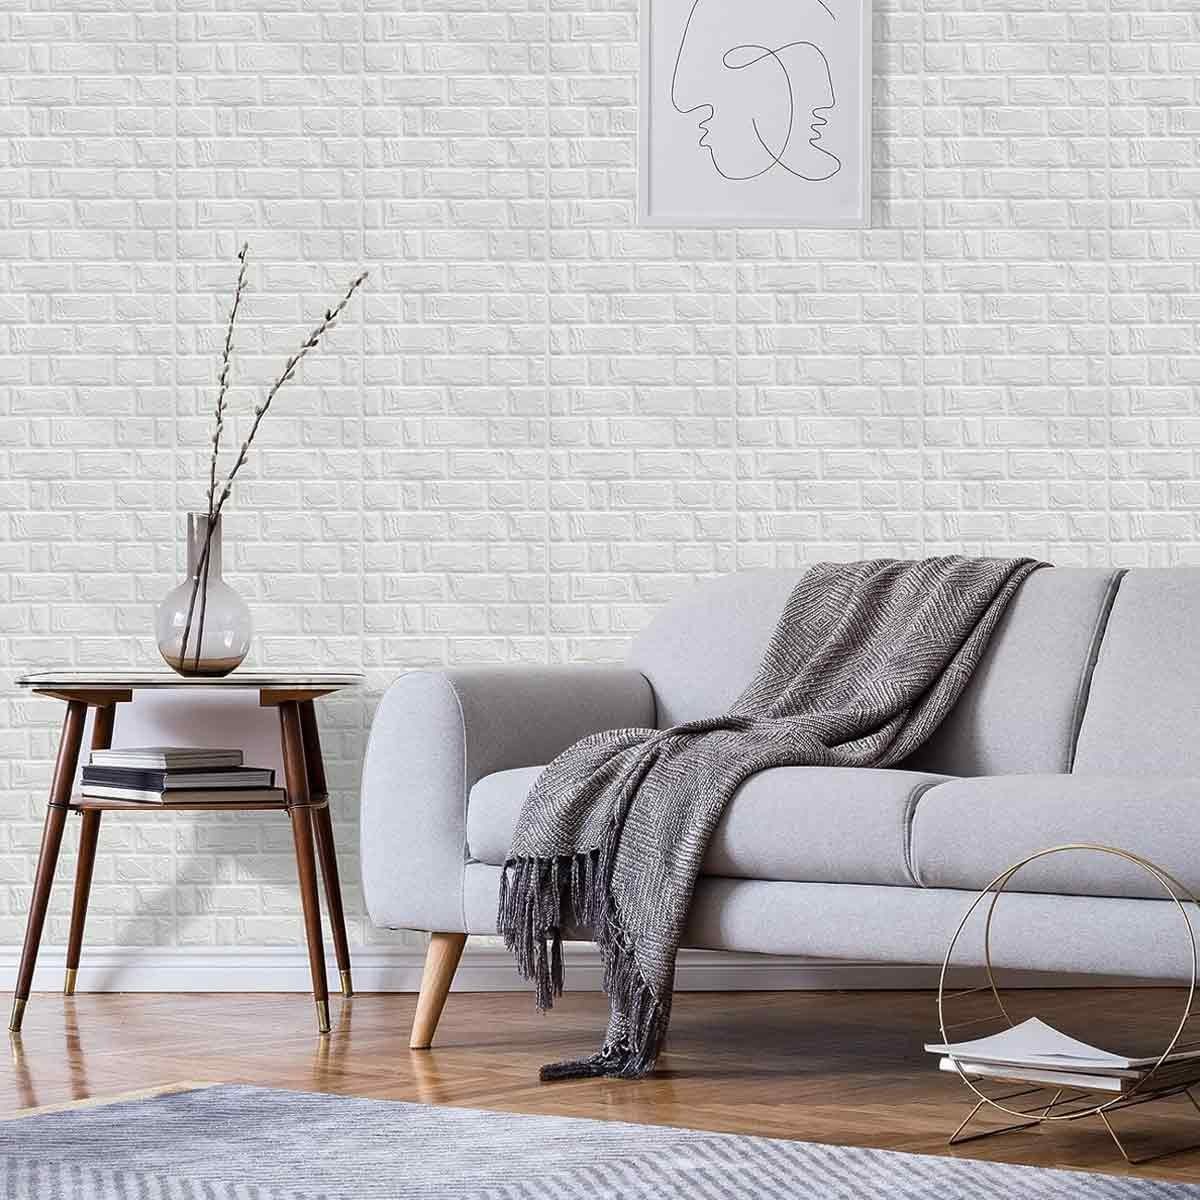 3D-Ziegelstein-Tapete,schaum-Ziegelstein-Wandpaneele,für Jormftte Fototapete Schlafzimmer Weiß